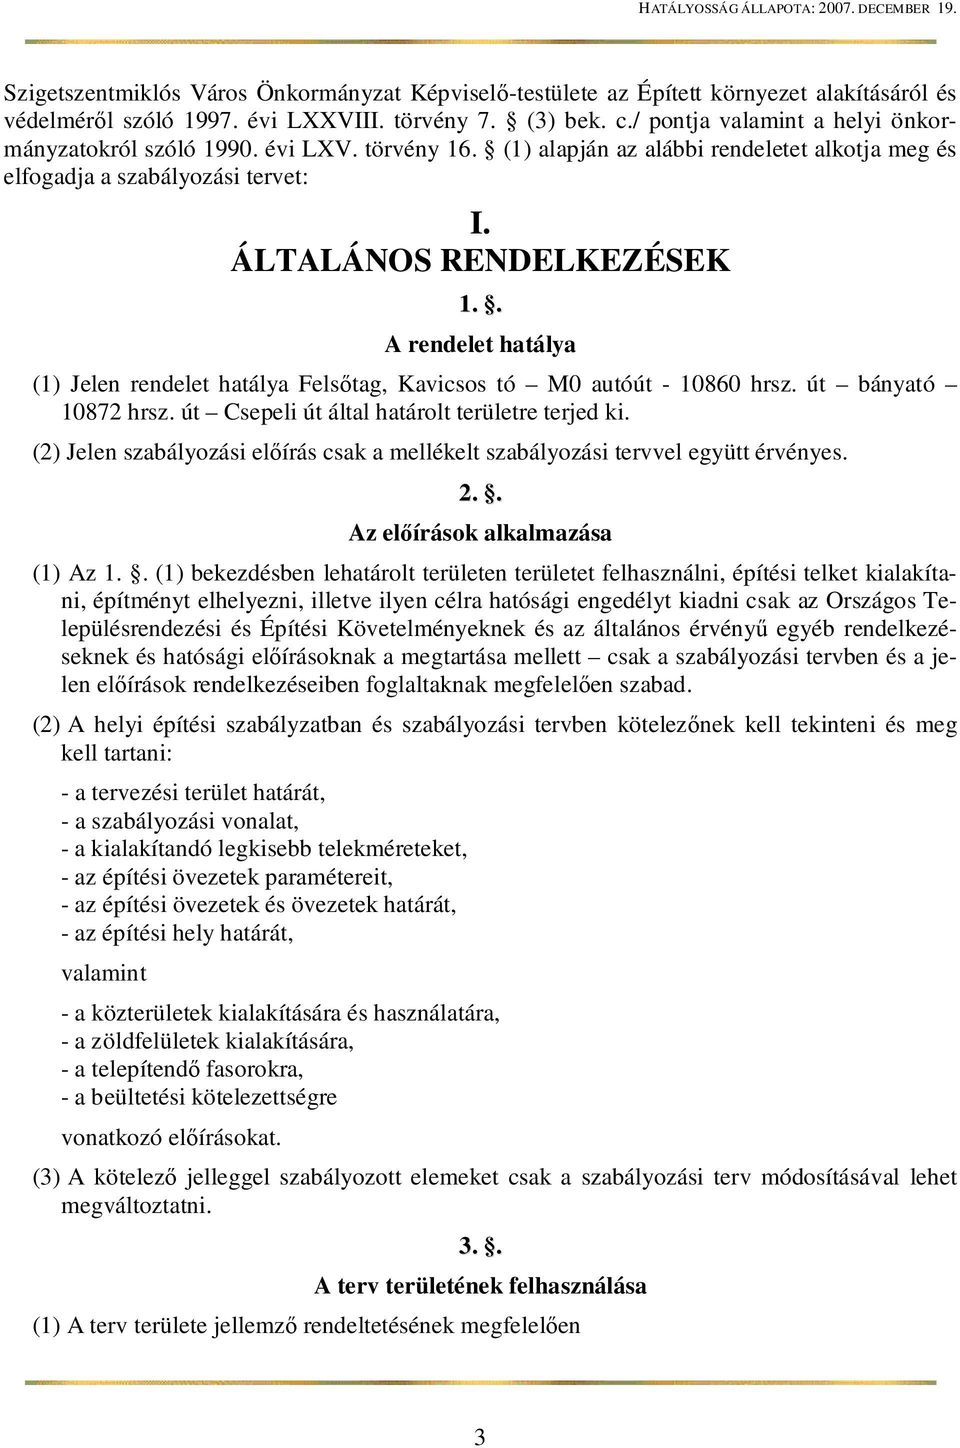 . A rendelet hatálya (1) Jelen rendelet hatálya Fels tag, Kavicsos tó M0 autóút - 10860 hrsz. út bányató 10872 hrsz. út Csepeli út által határolt területre terjed ki.